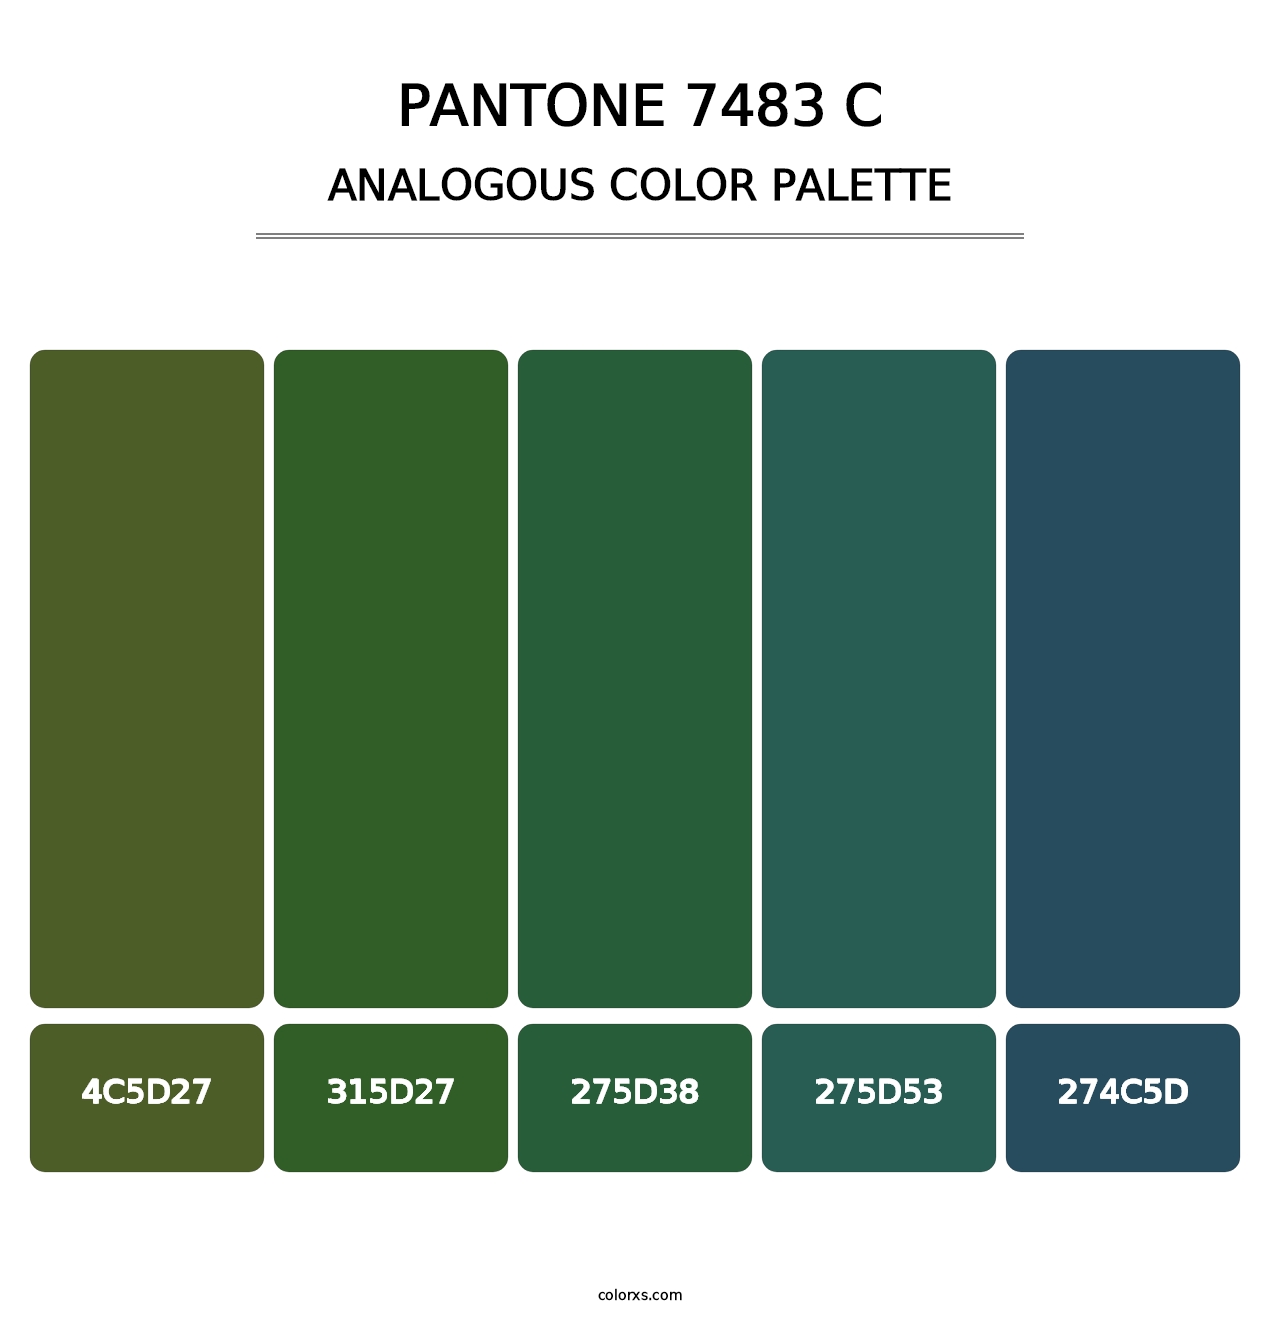 PANTONE 7483 C - Analogous Color Palette